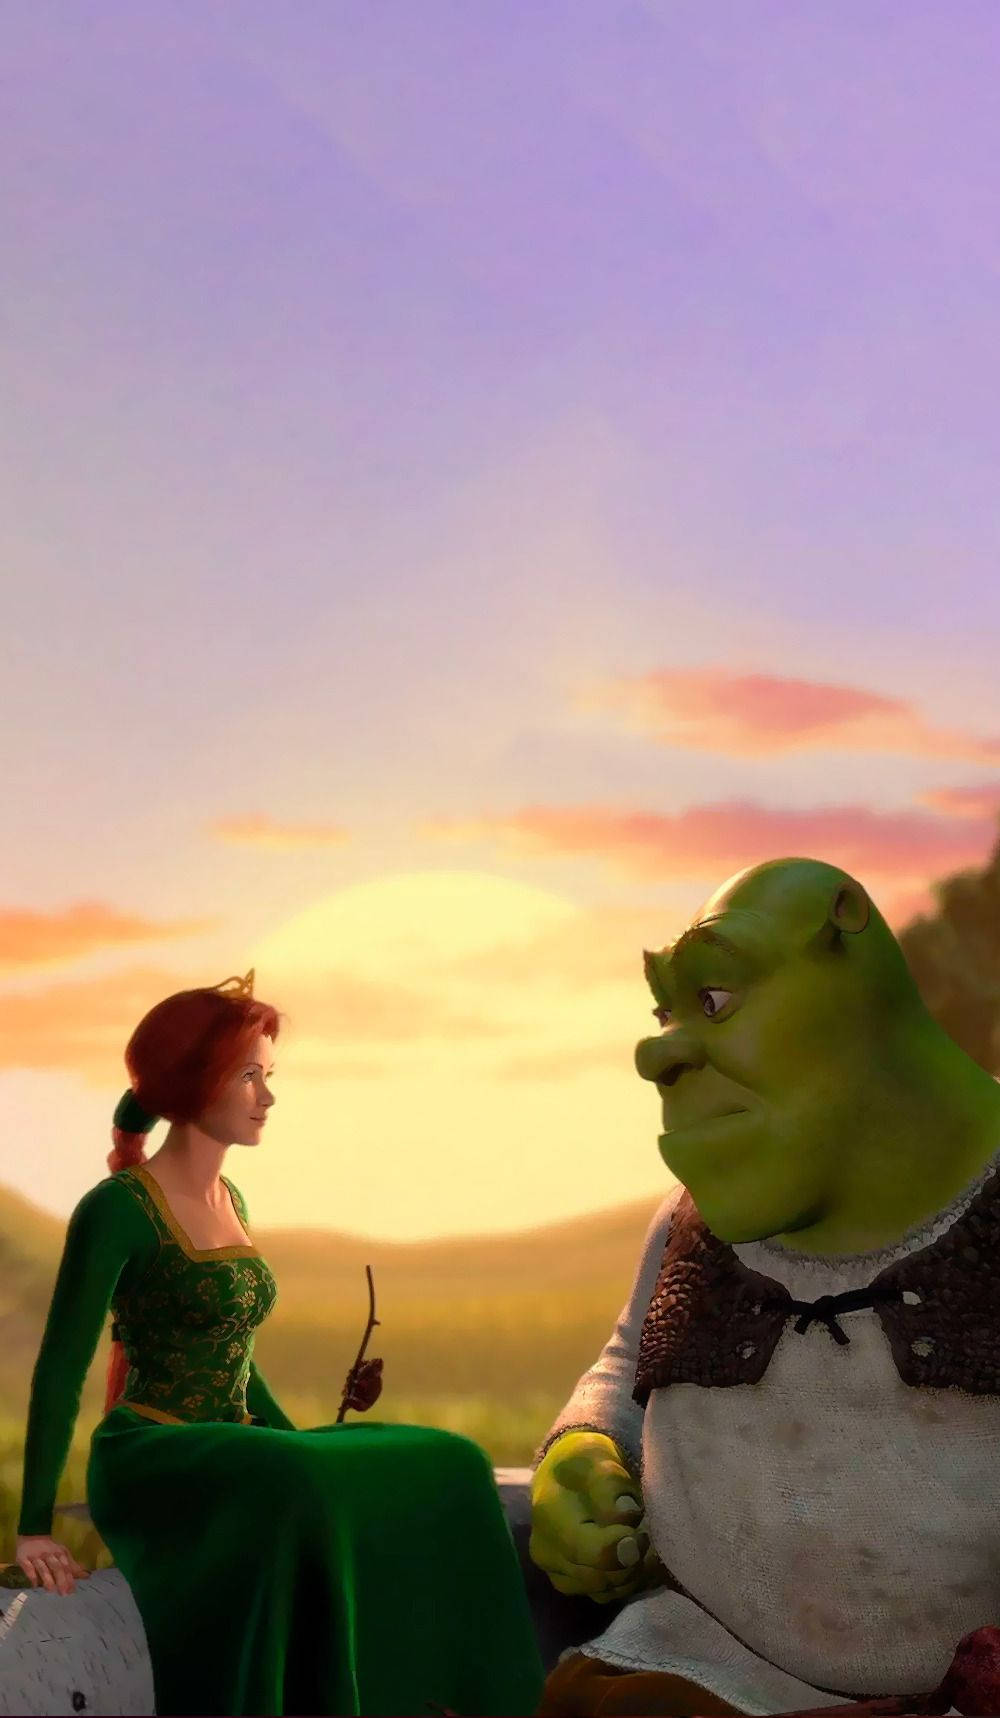 Shrek And Fiona Sunset Wallpaper